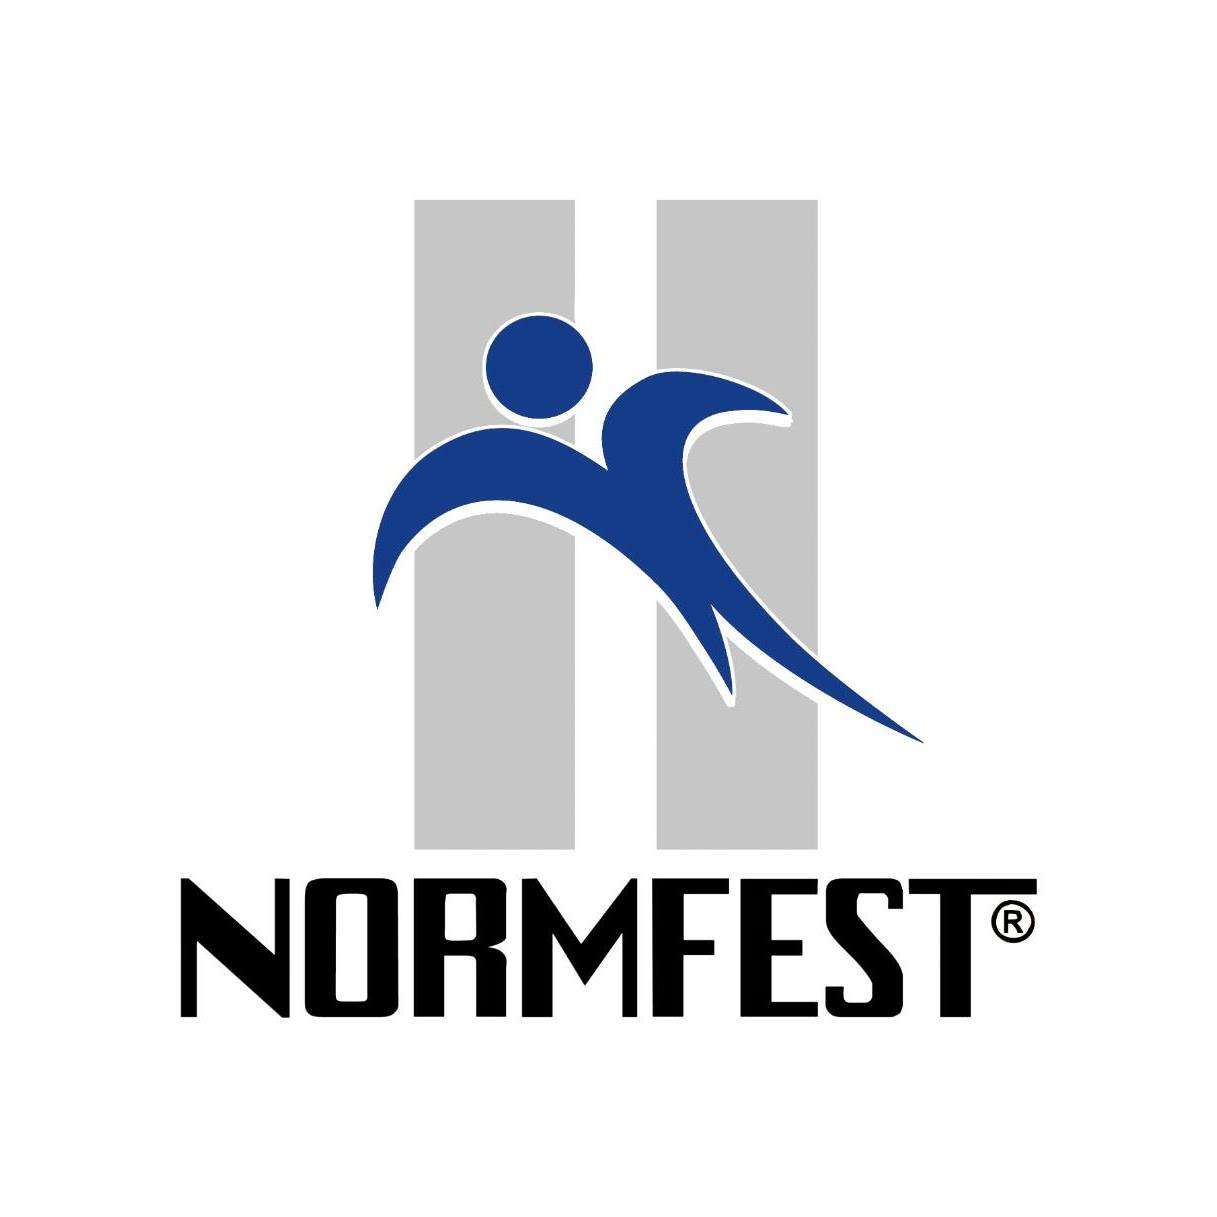 Brandfetch  Normfest Logos & Brand Assets